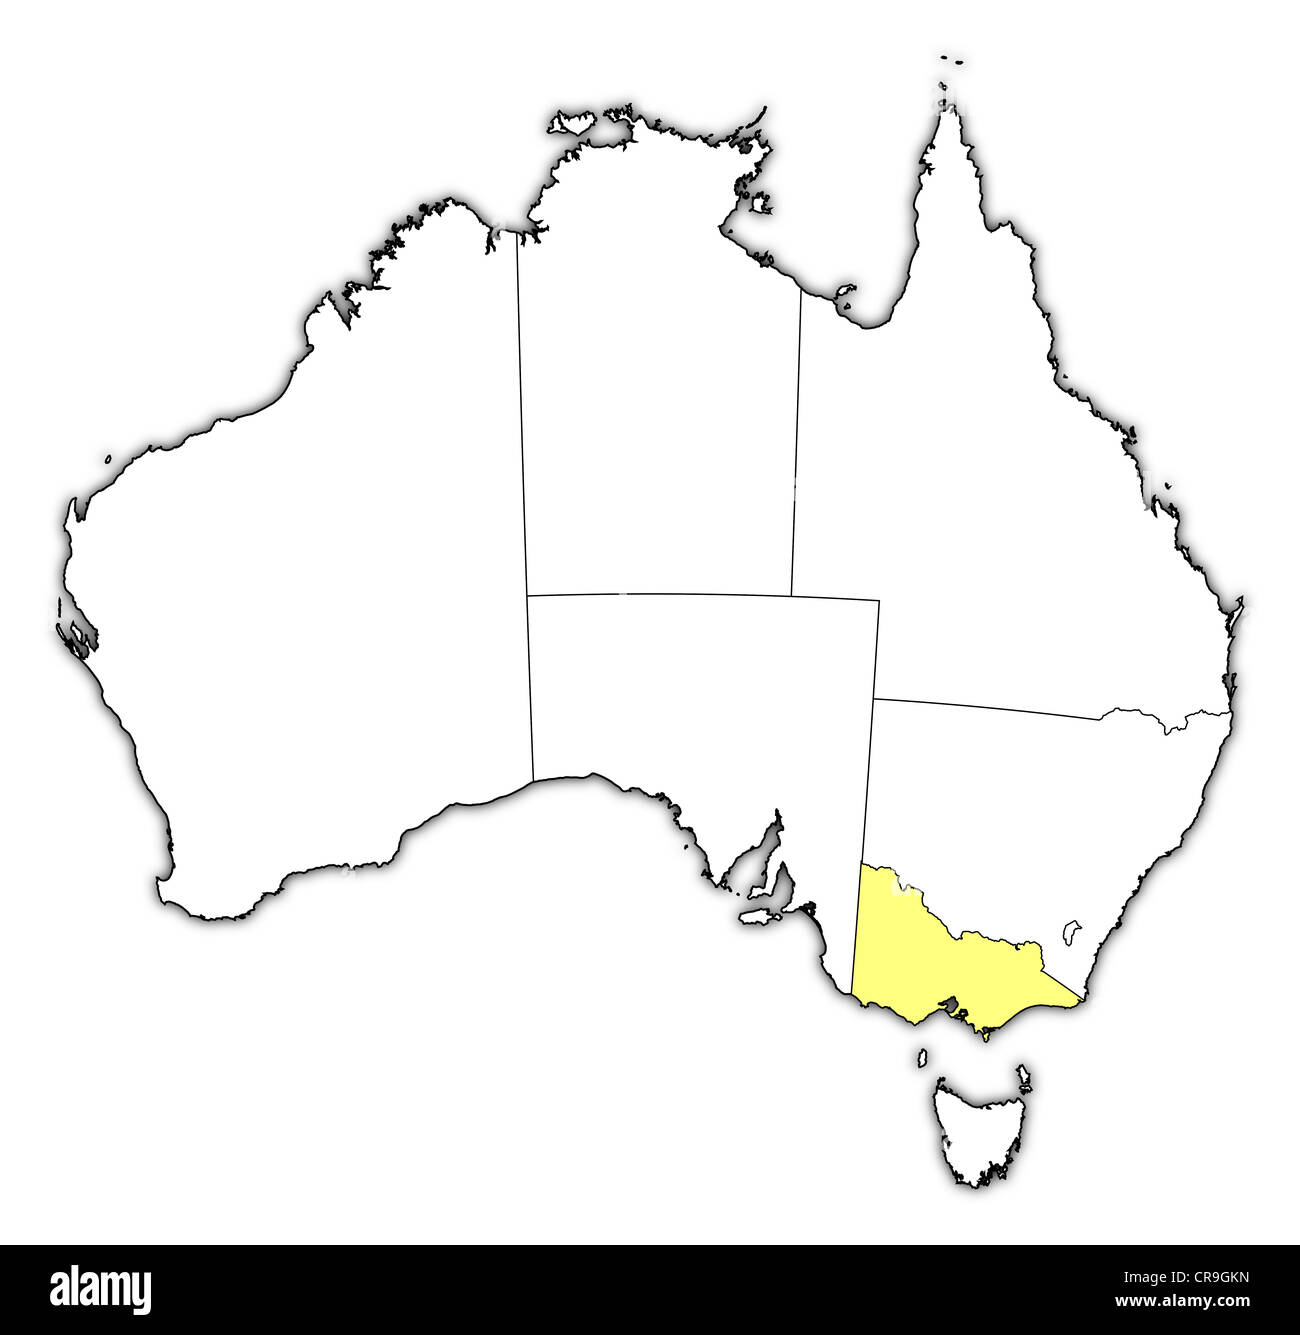 Politische Karte von Australien mit den mehrere Staaten wo Victoria markiert ist. Stockfoto